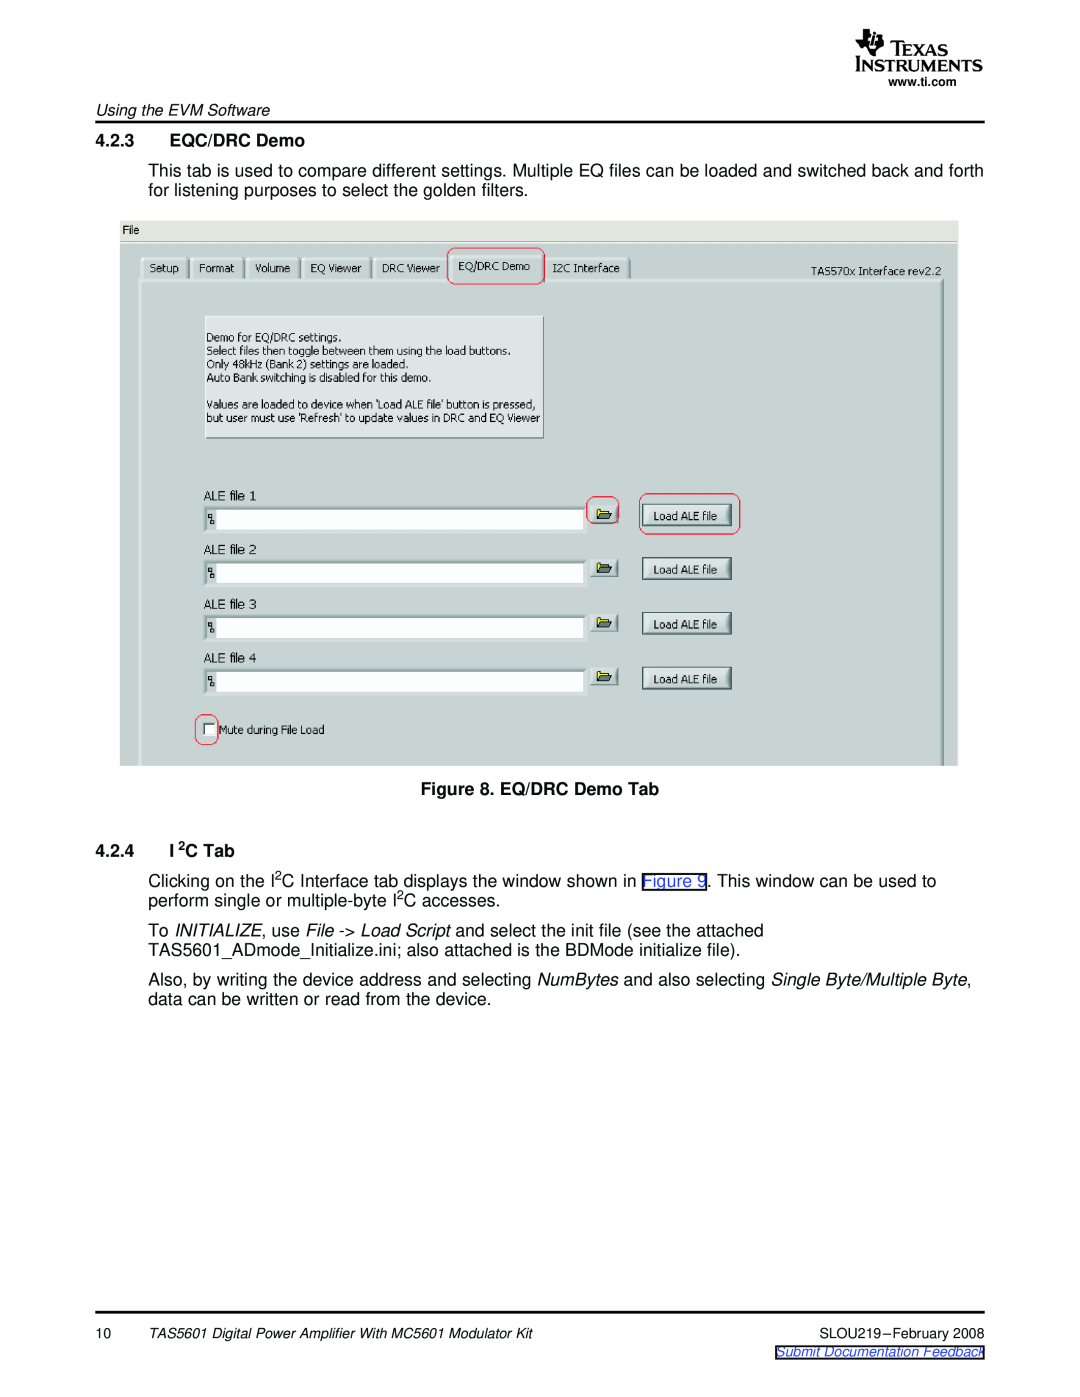 Texas Instruments TAS5601 manual 4.2.3EQC/DRC Demo, EQ/DRC Demo Tab 4.2.4I 2C Tab, SLOU219-February2008 